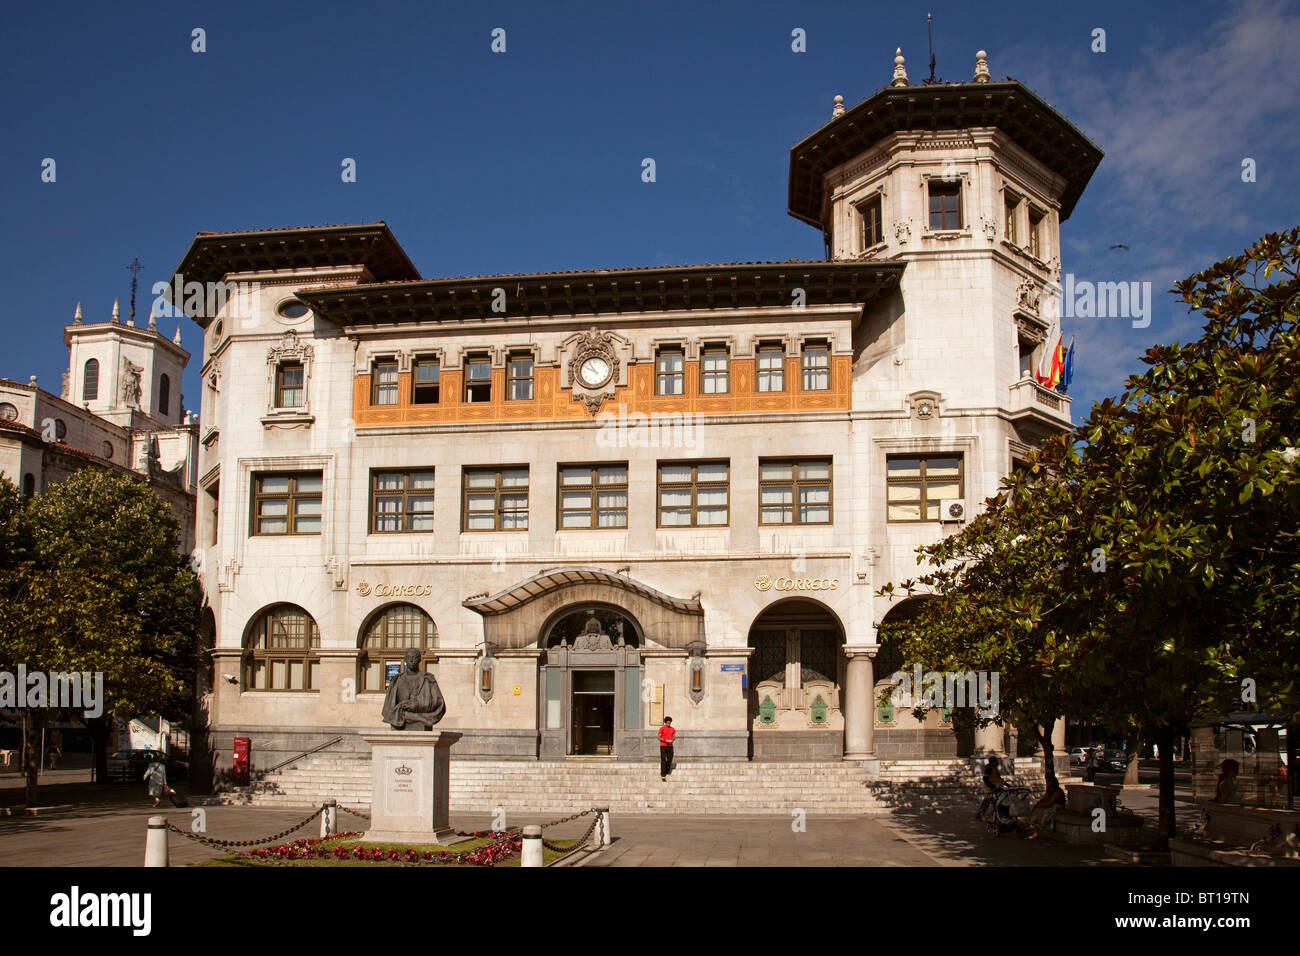 Edificio de Correos en Santander Cantabria España Post Office building in Santander Cantabria Spain Stock Photo